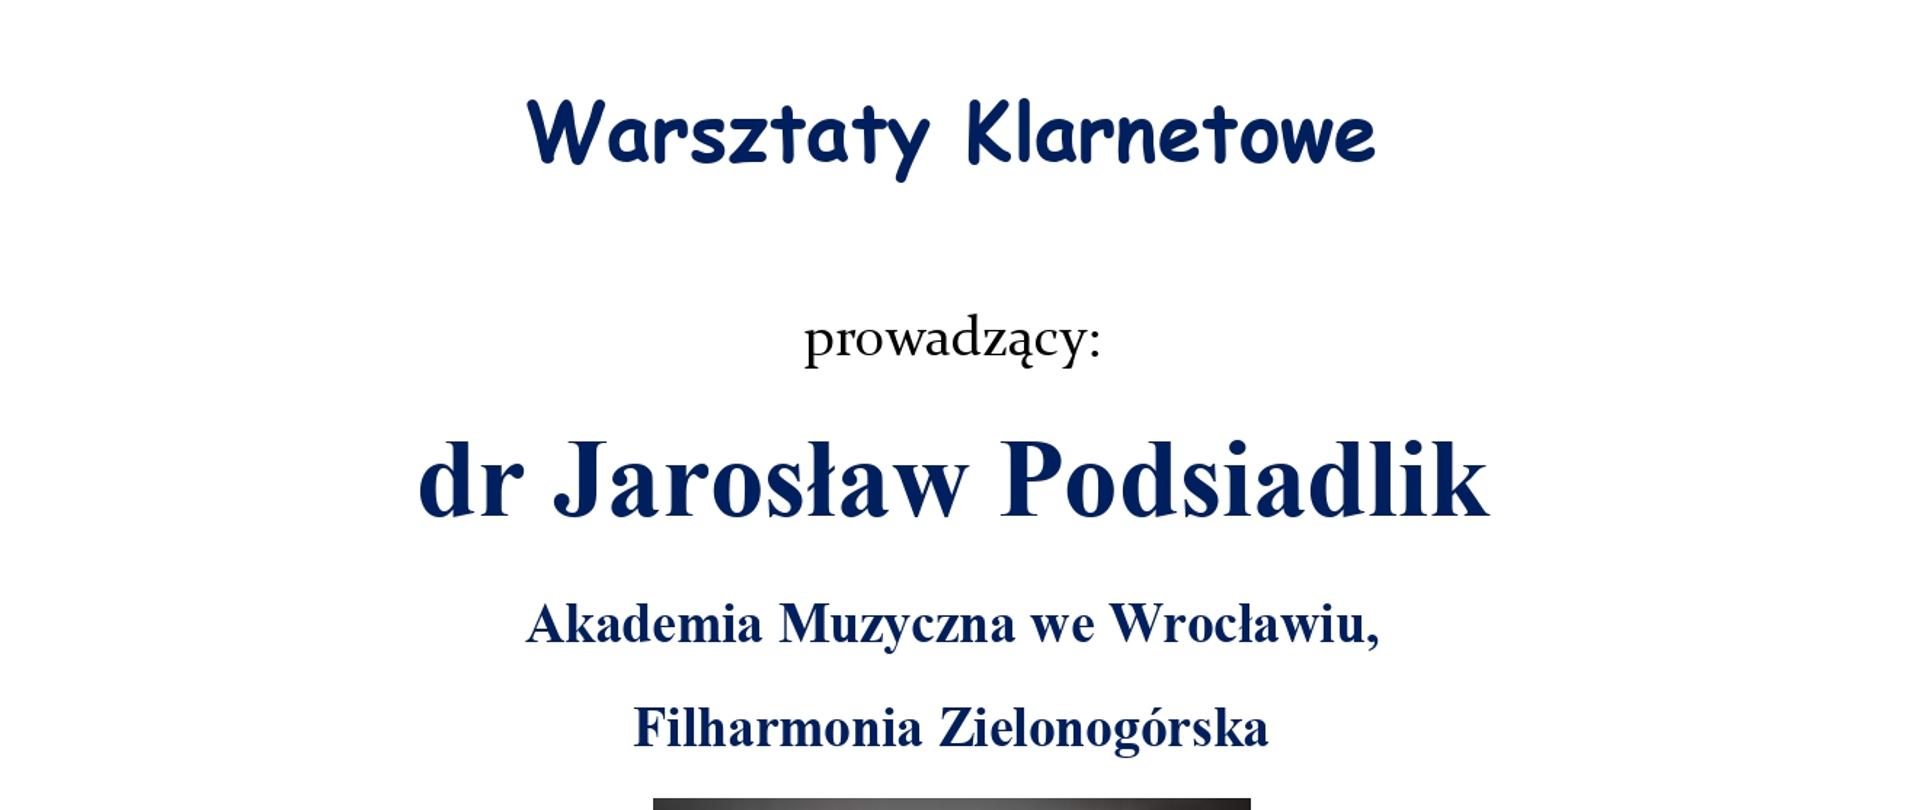 Białe tło, na środku zdjęcie Jarosława Podsiadlika, oraz informacje dotyczące warsztatów klarnetowych